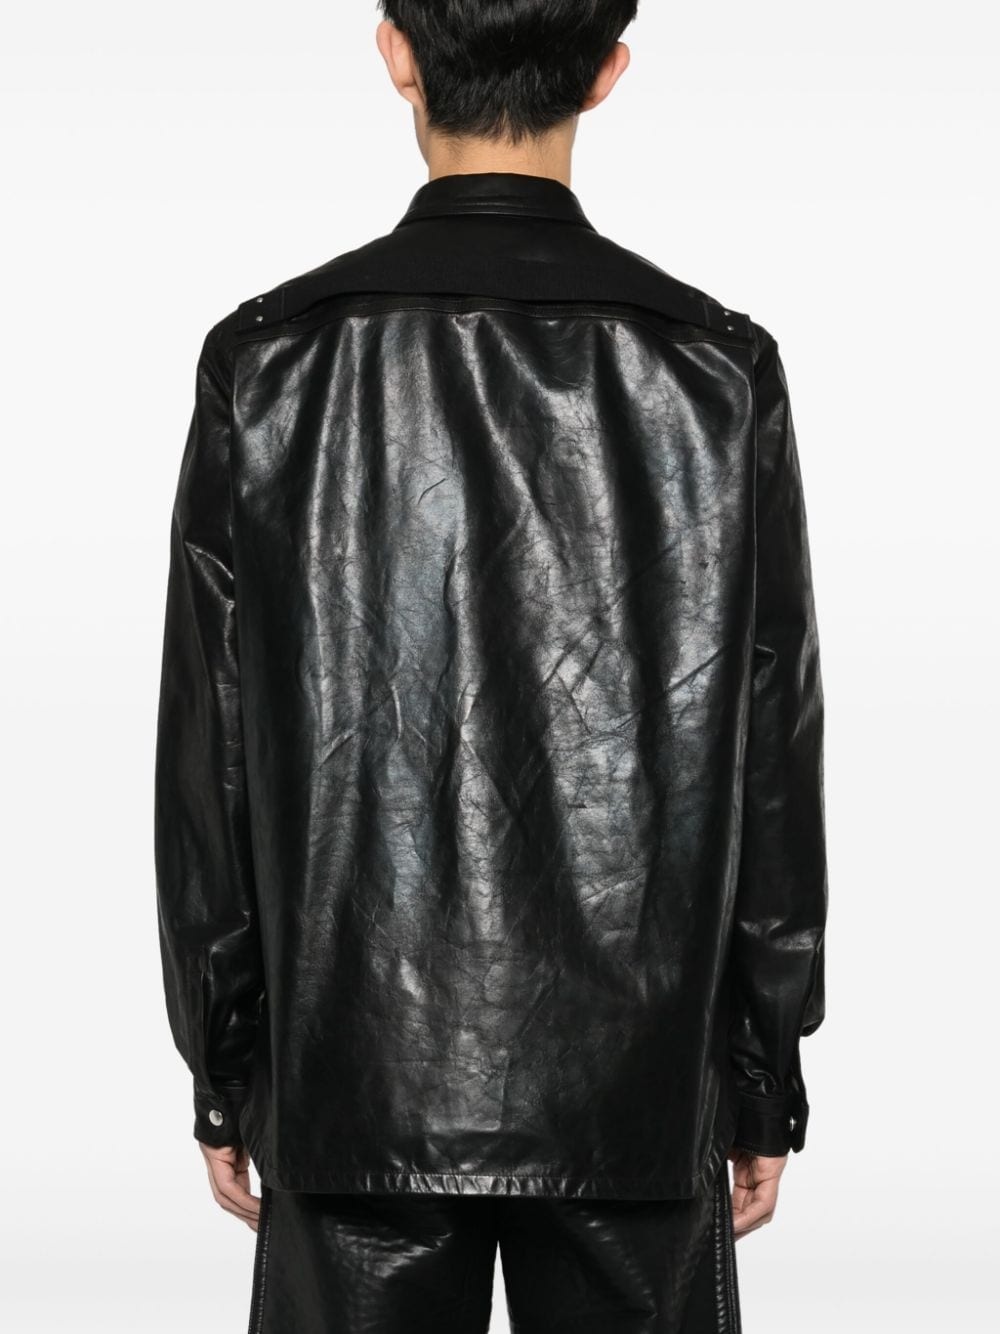 Outershirt leather jacket - 4